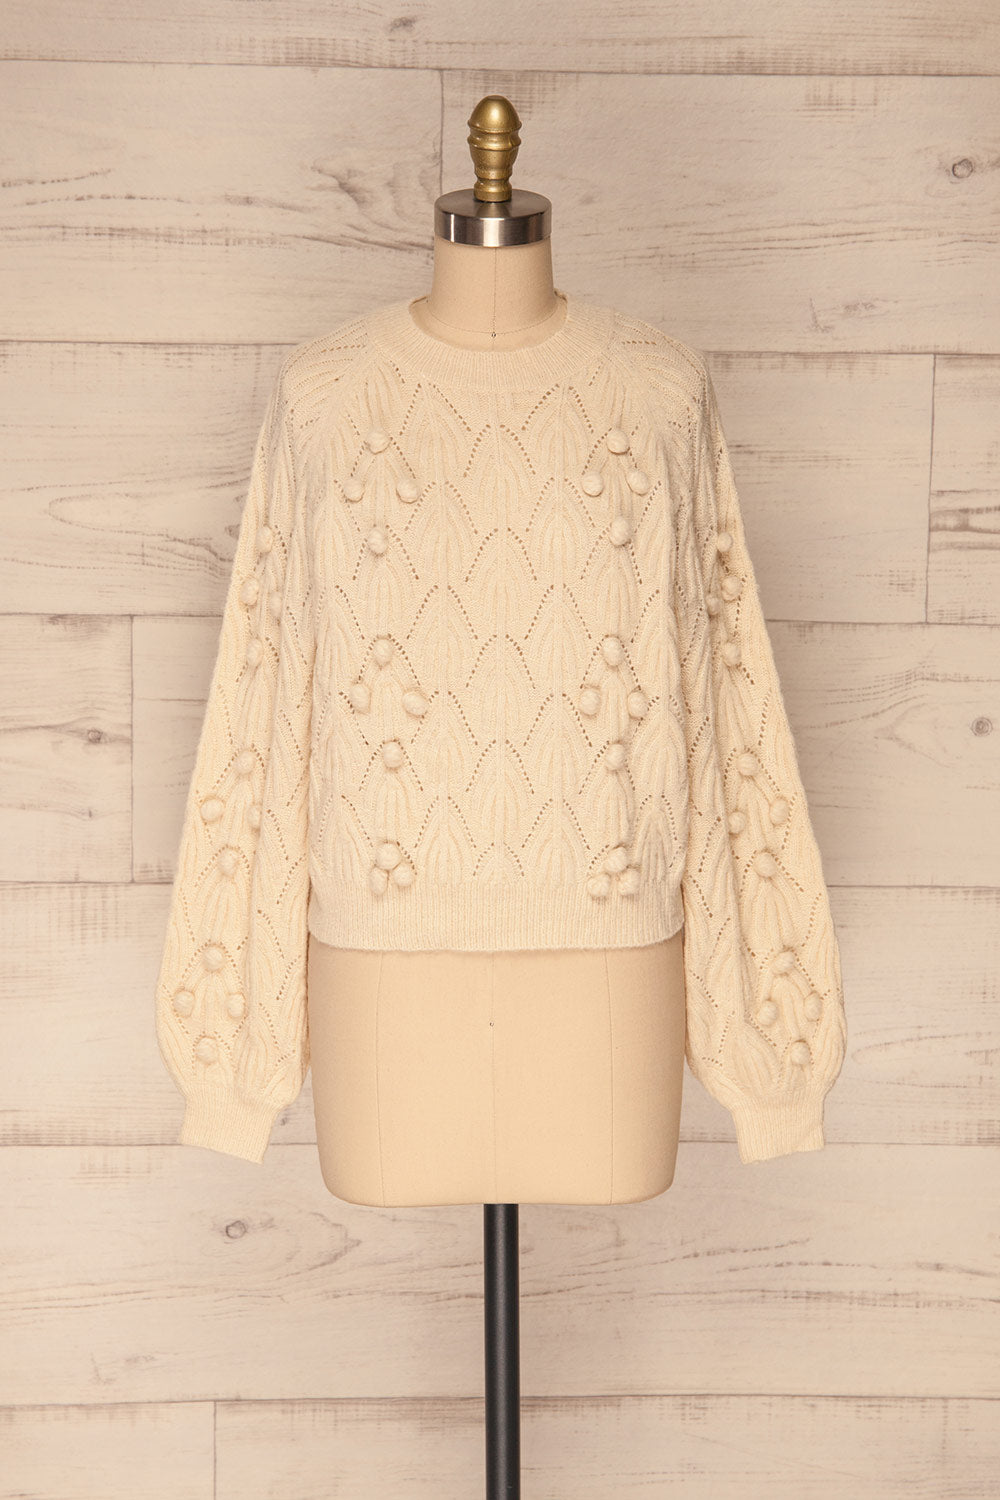 Fanavoll Beige Knit Sweater | La Petite Garçonne front view 